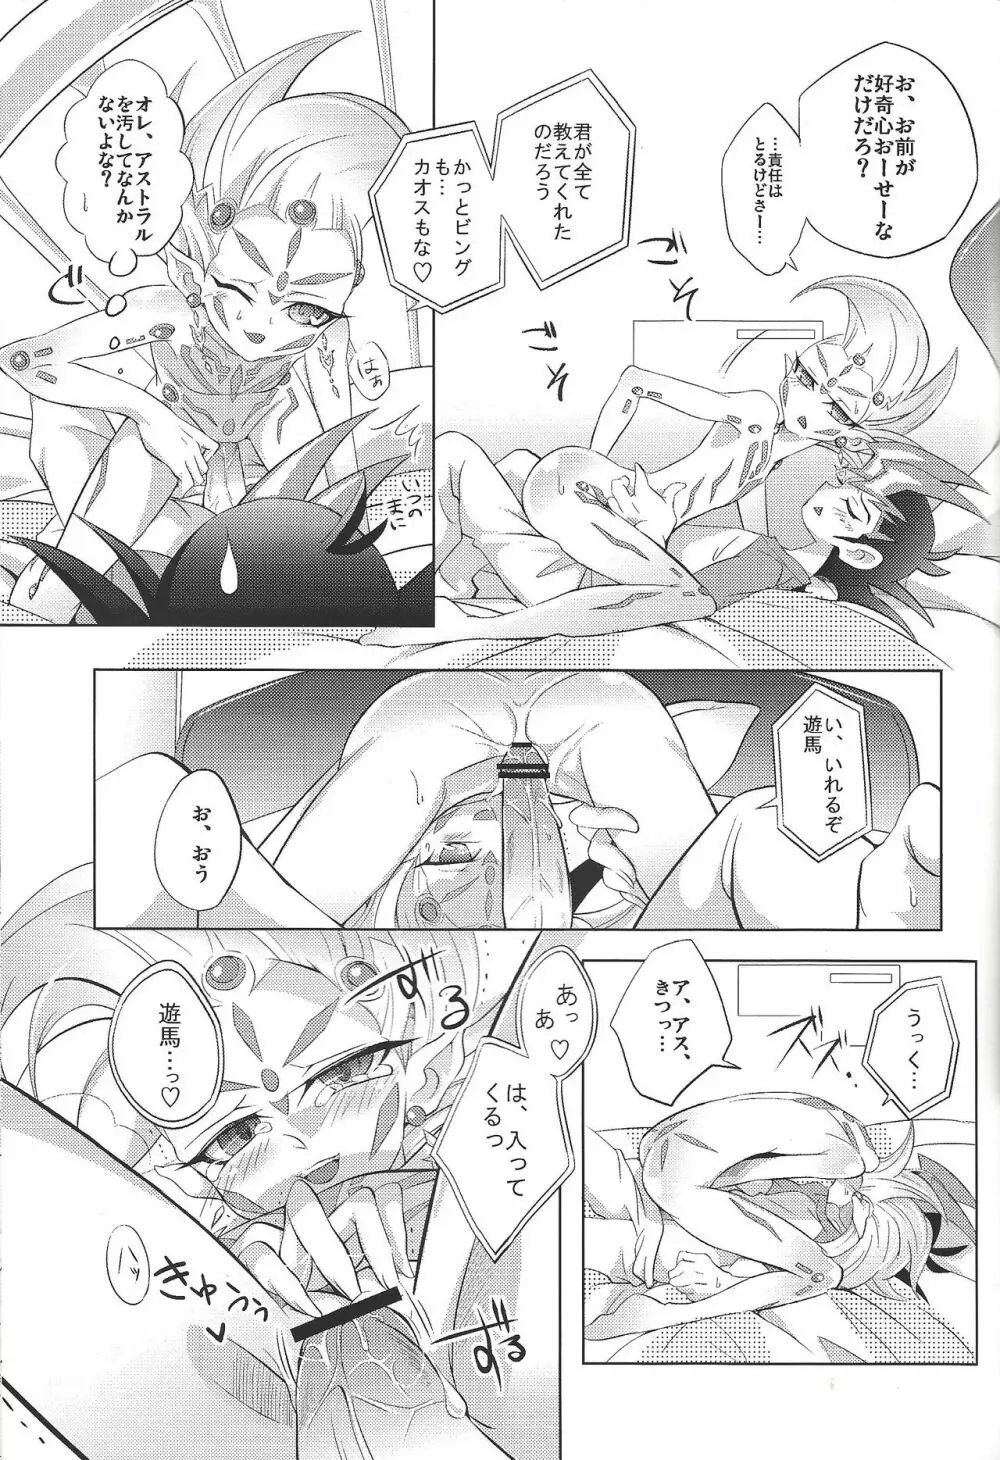 カオス☆オーバーレイユニット - page14